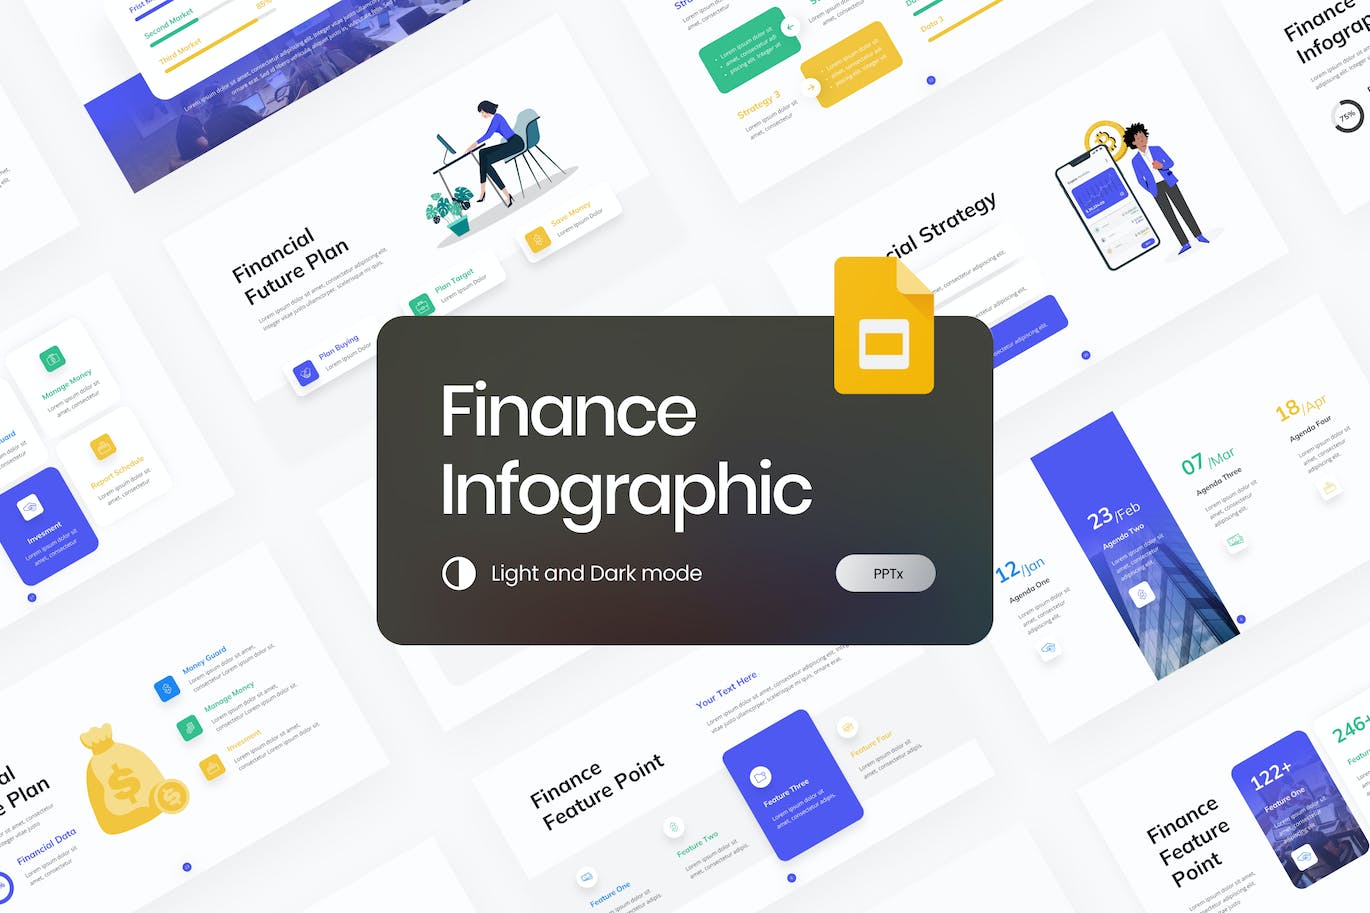 金融数据图表谷歌幻灯片演示模板 Finance Infographic Google Slides Template 幻灯图表 第1张